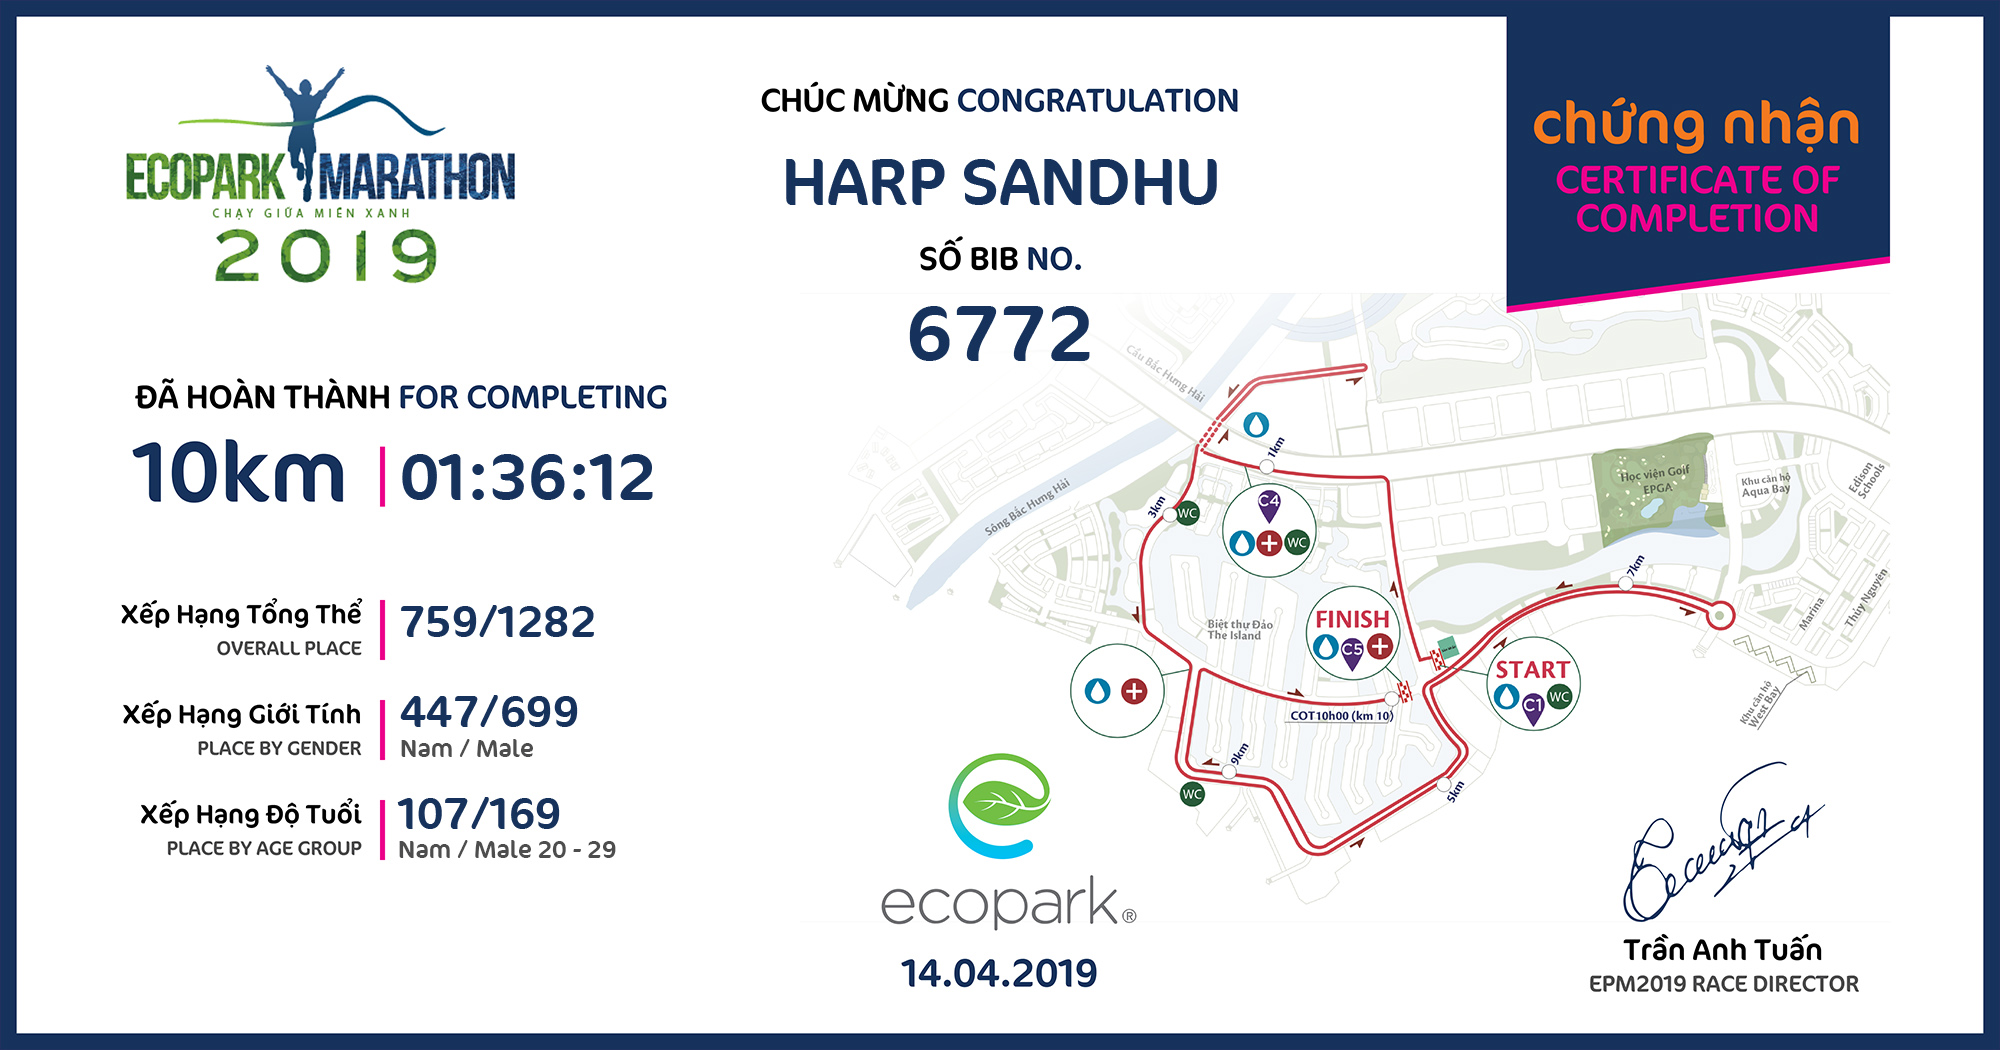 6772 - Harp Sandhu